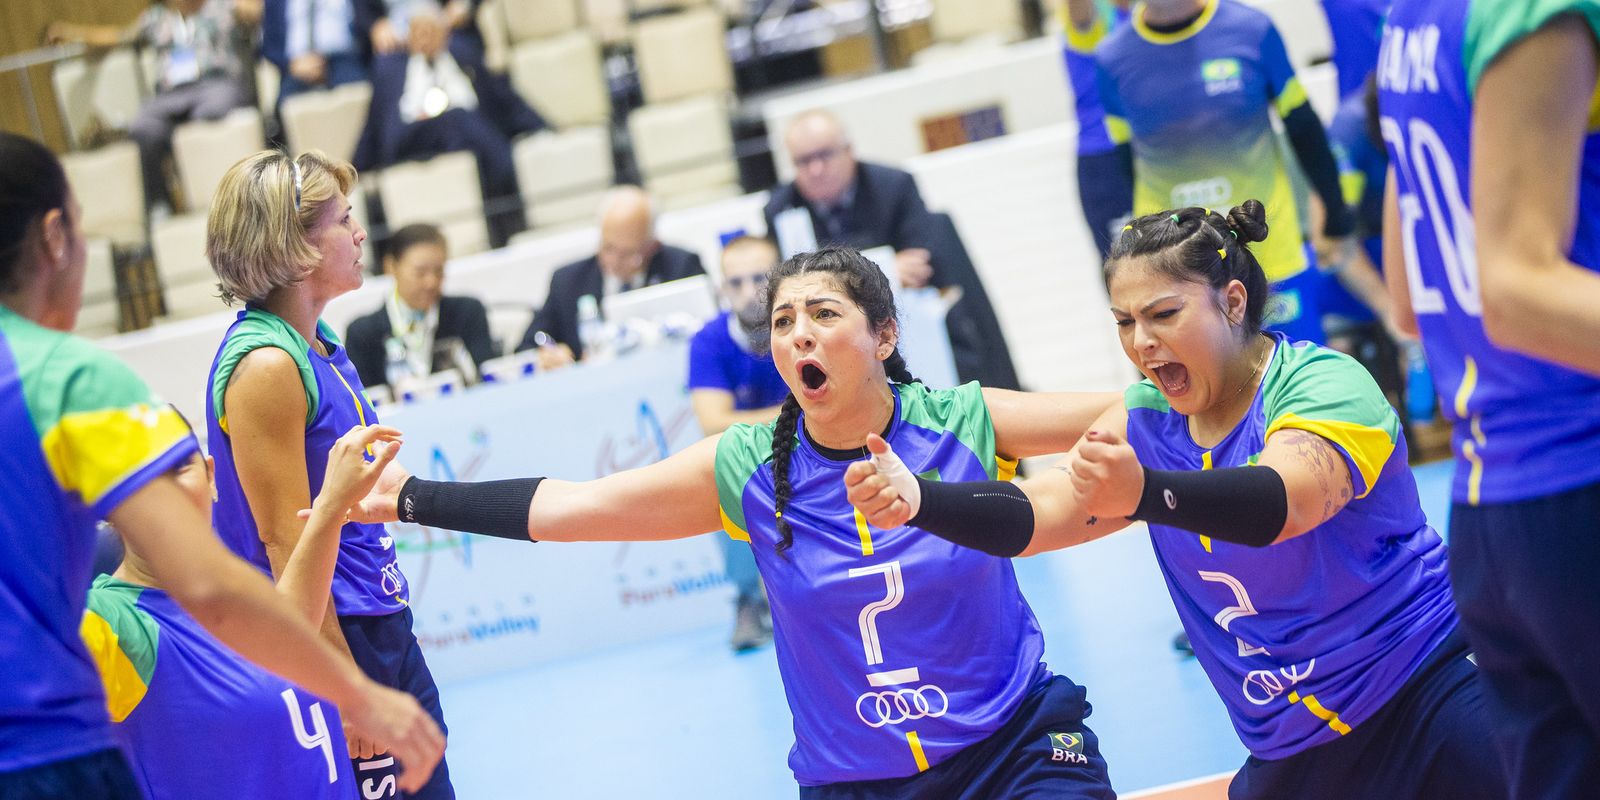 L’équipe féminine remporte un titre mondial sans précédent de volleyball assis